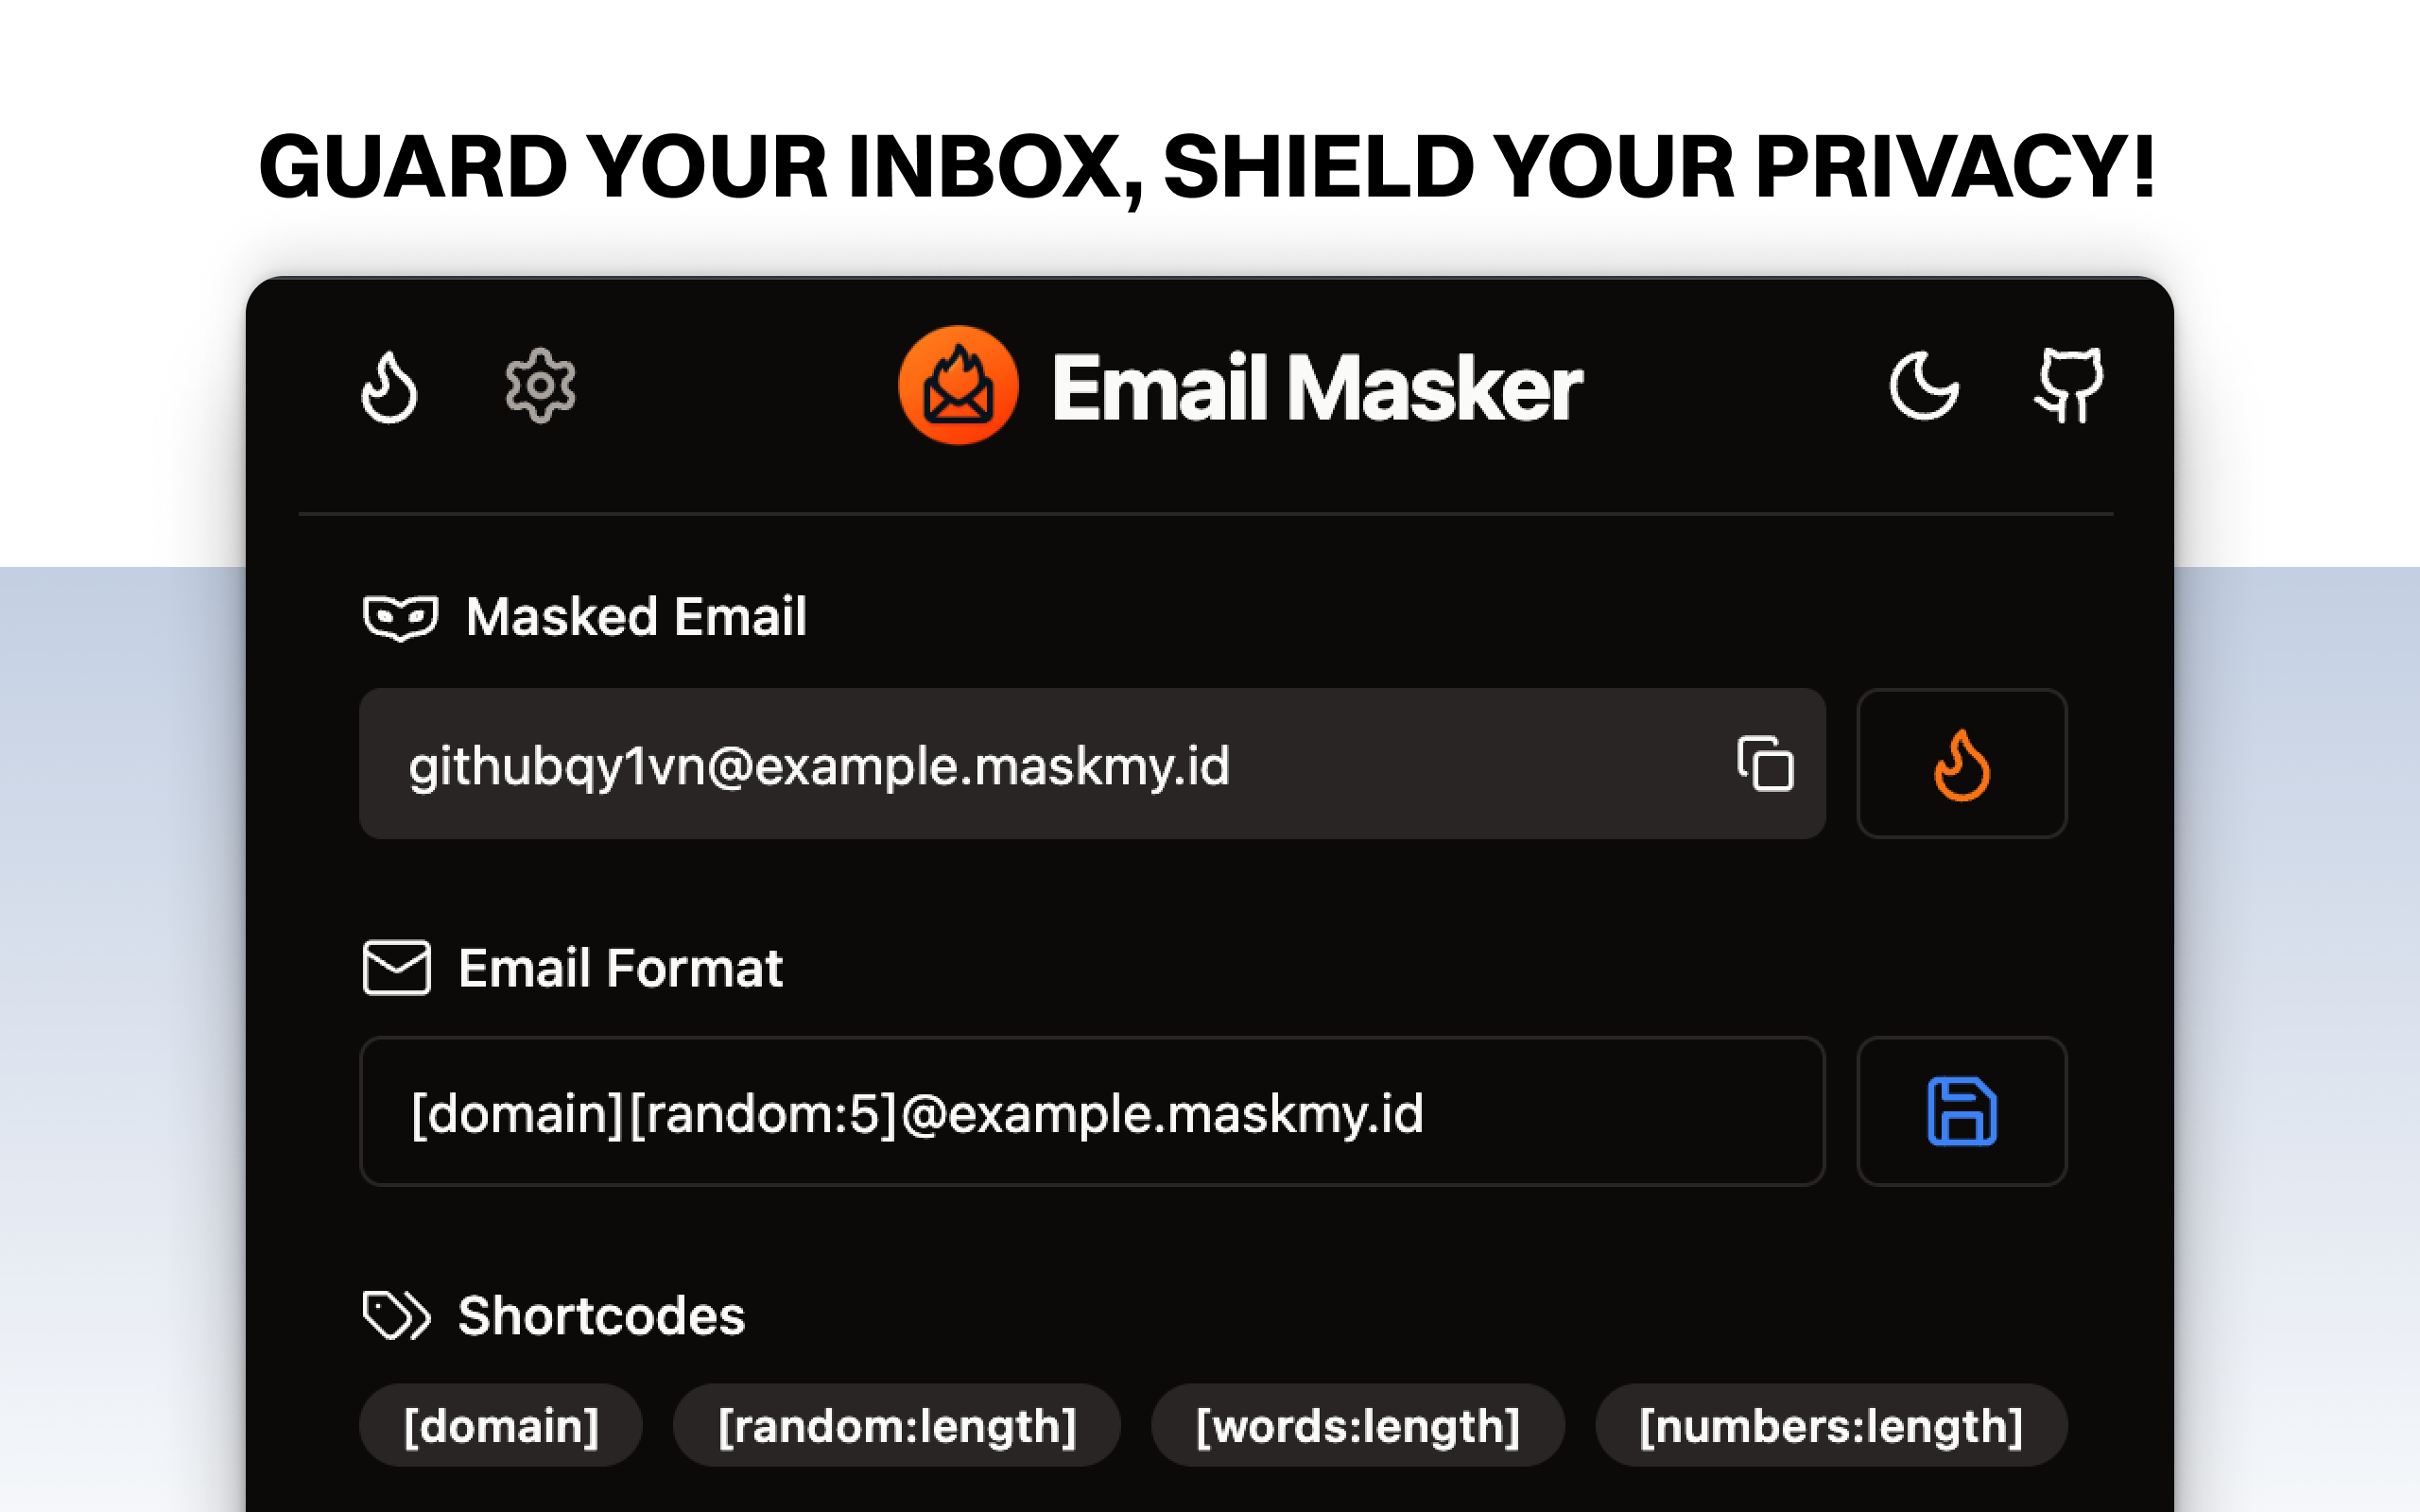 Email Masker